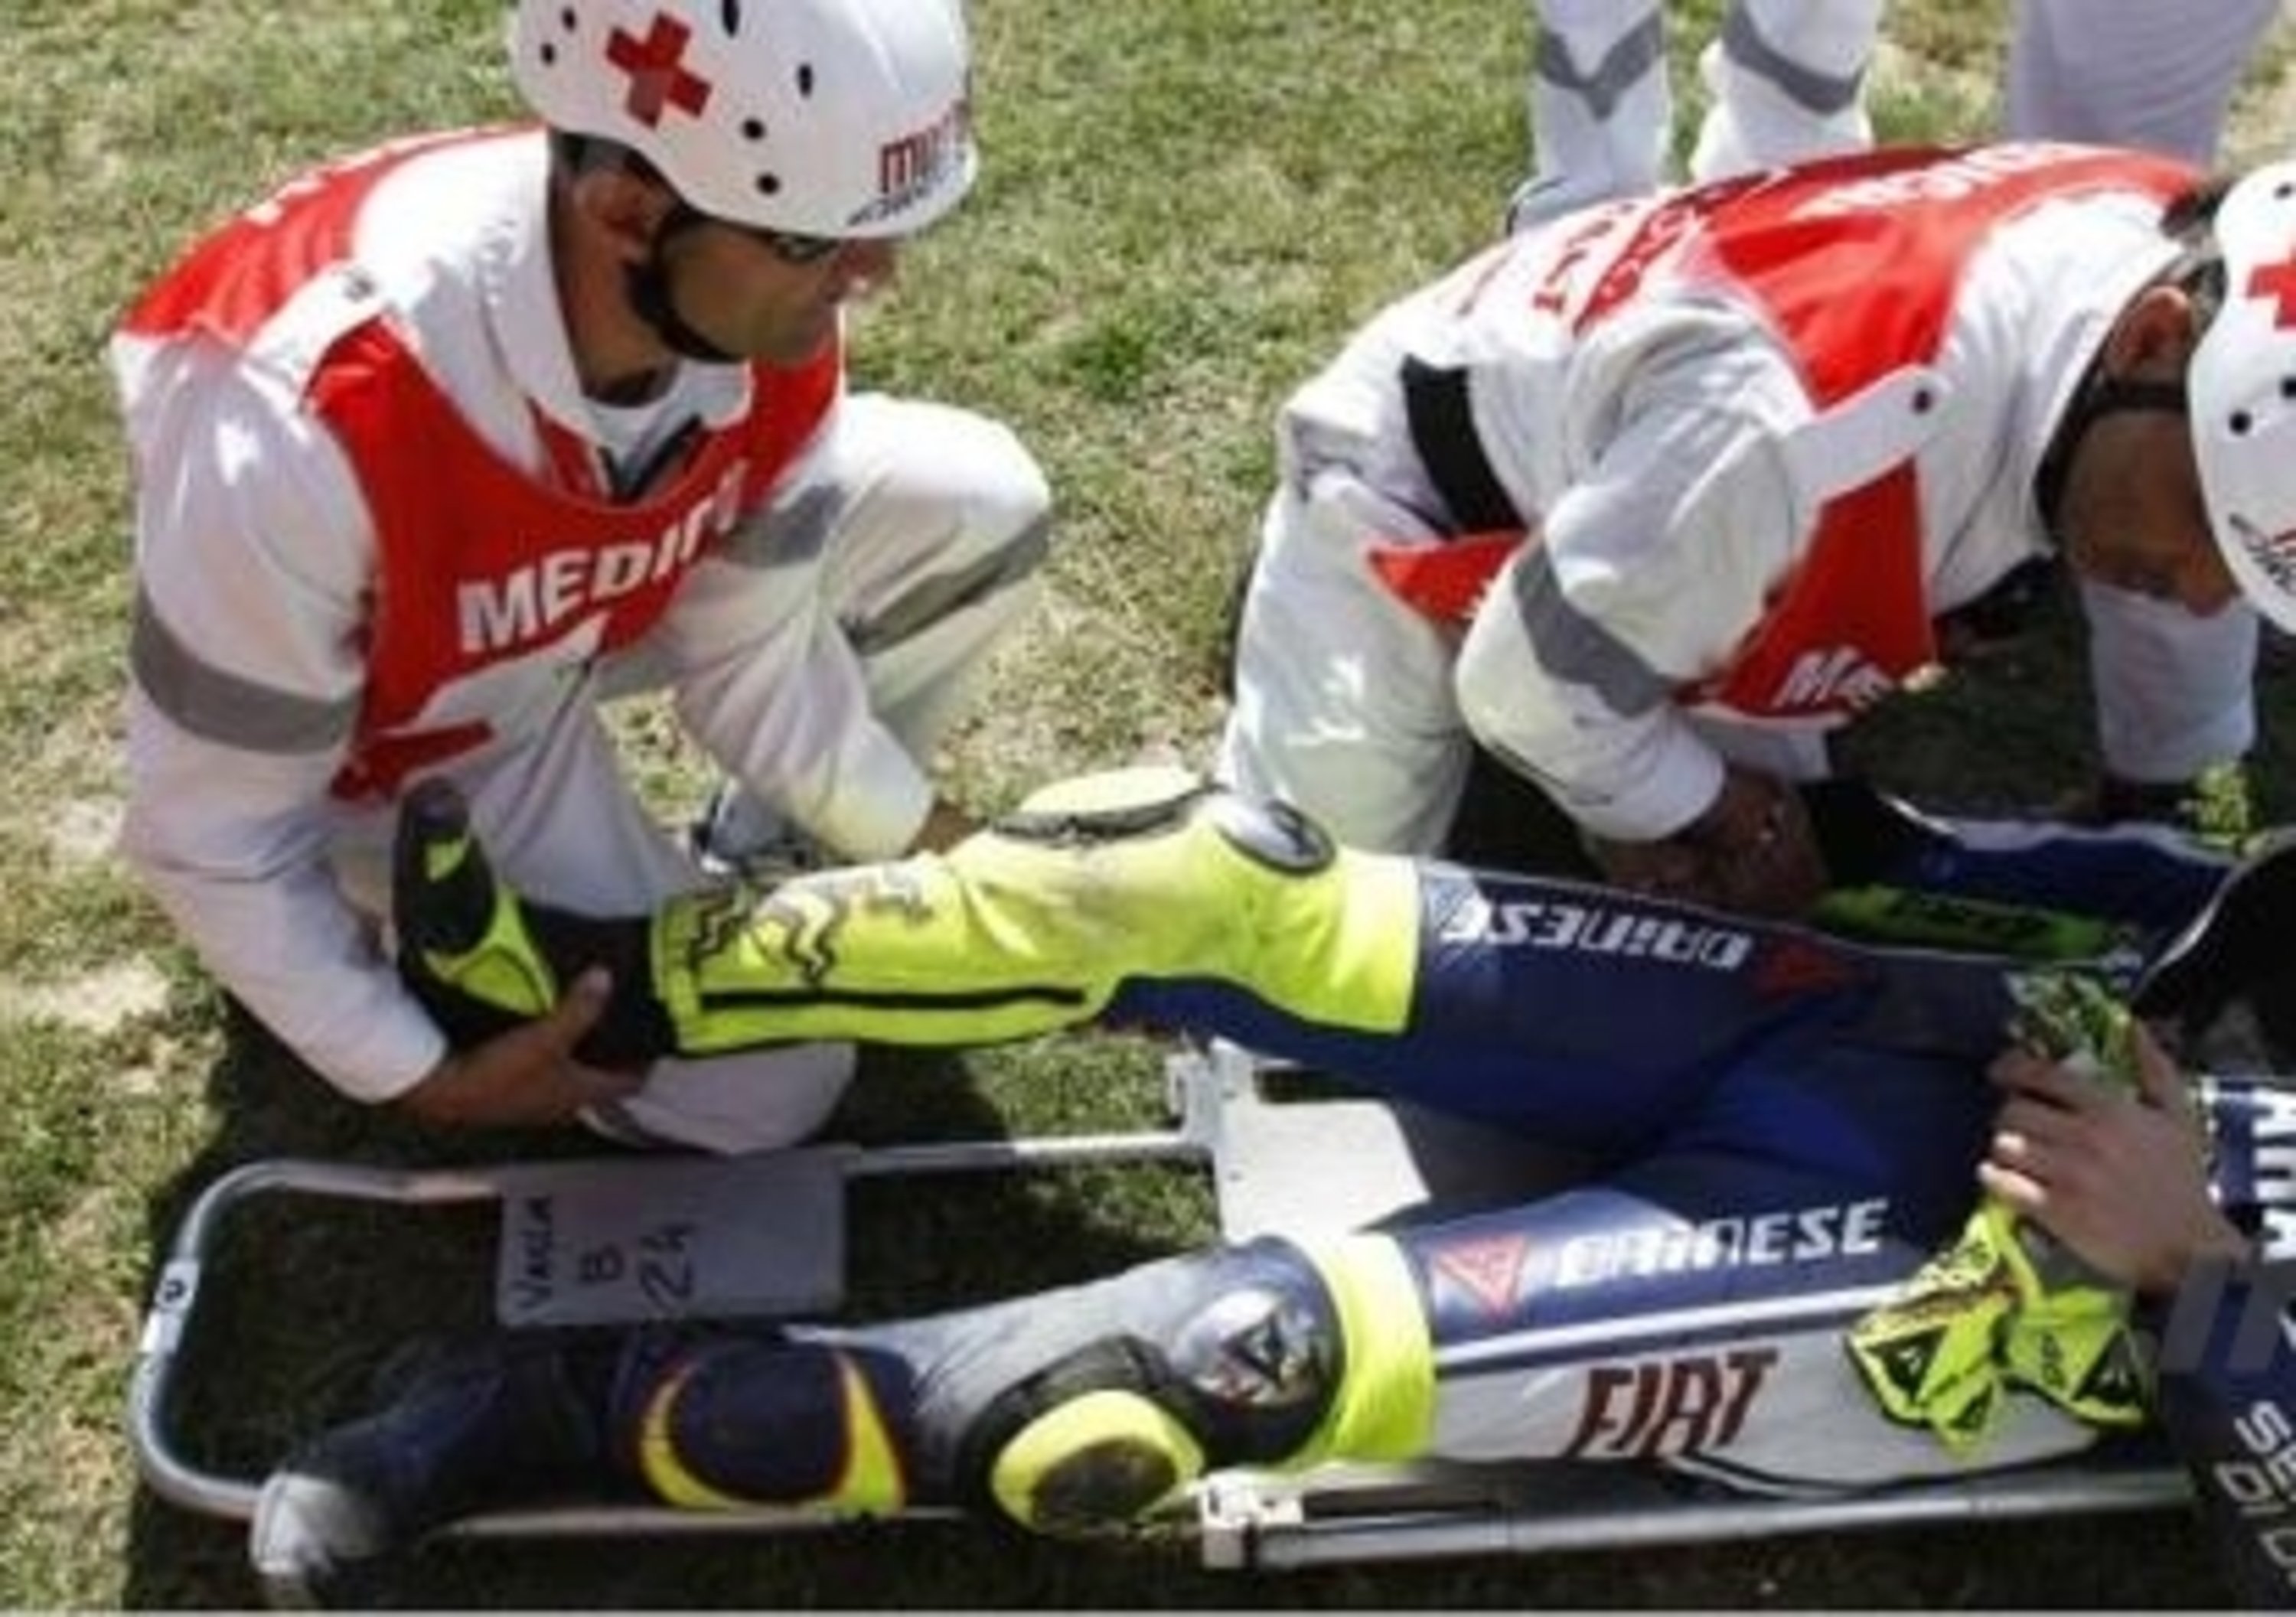 Rossi cade, frattura scomposta ed esposta di tibia e perone